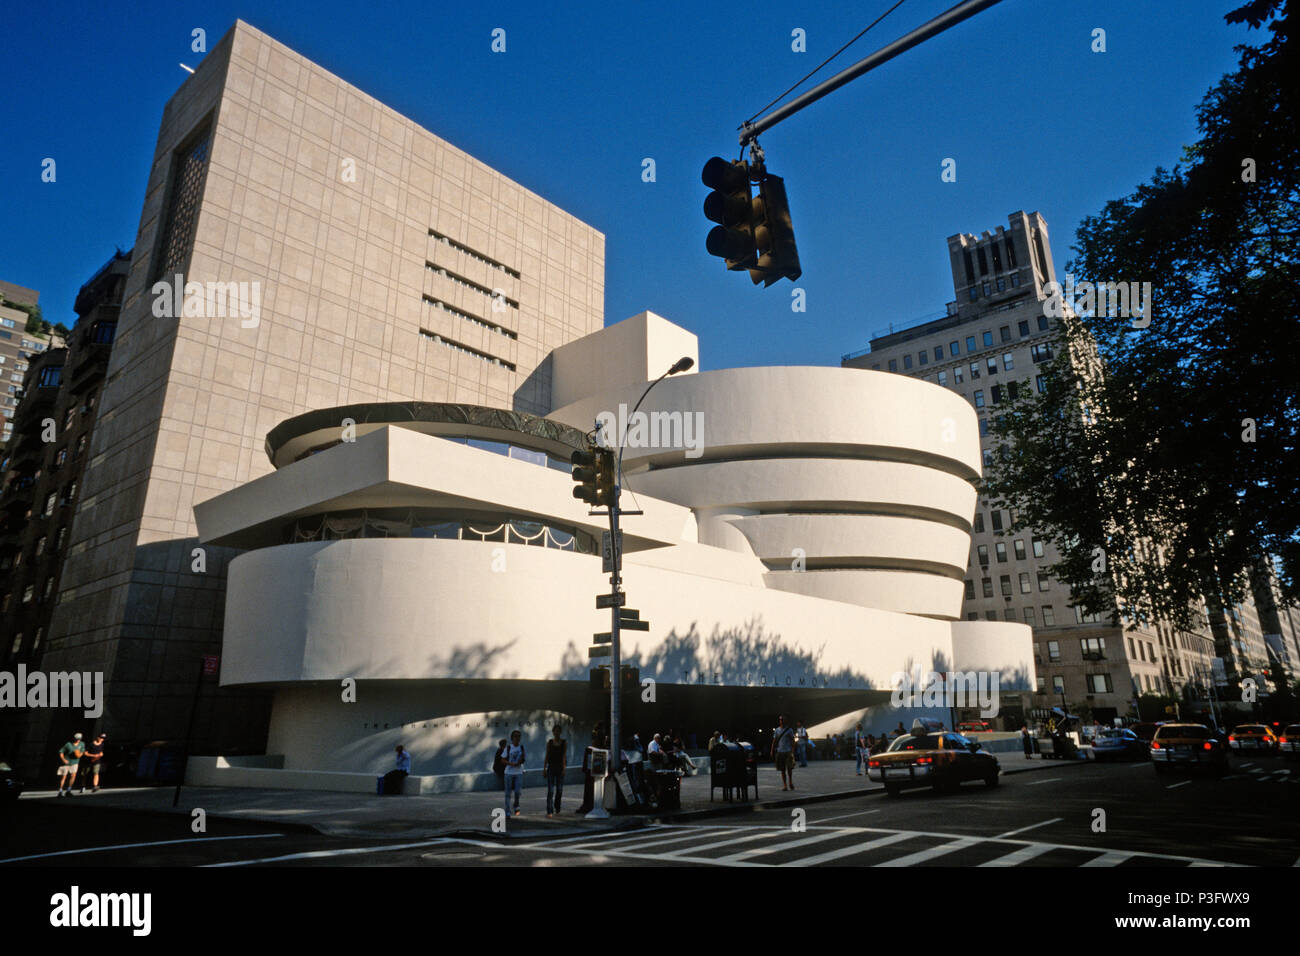 Manhattan, Nueva York, Estados Unidos. Solomon R. Guggenheim Museum de la Quinta Avenida, diseñado por Frank Lloyd Wright. Foto de stock